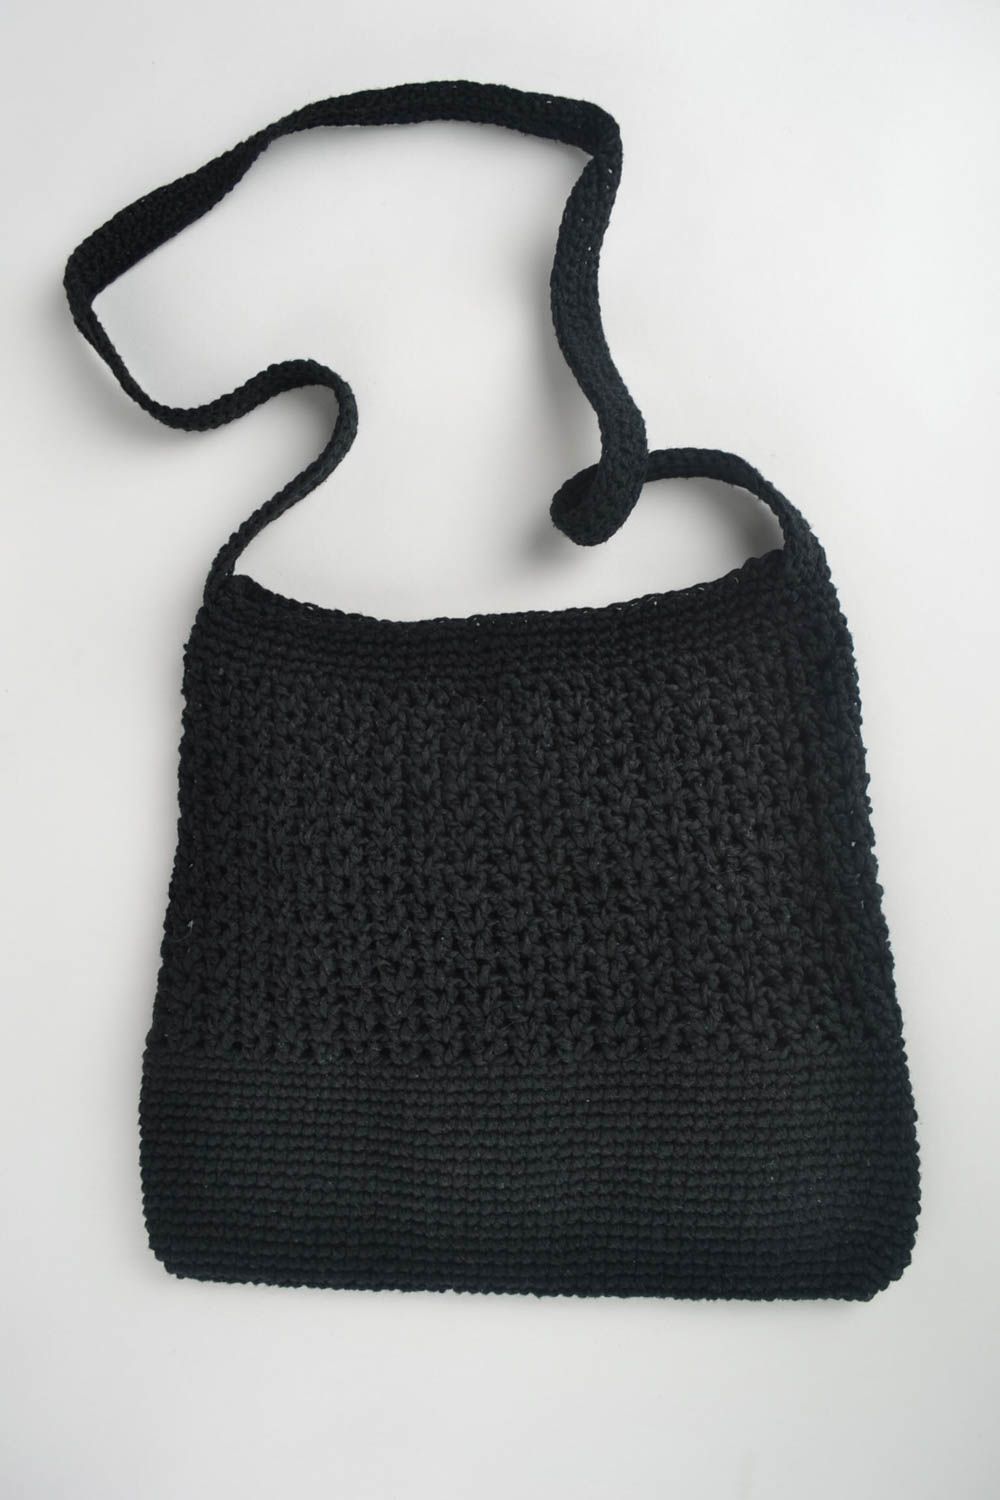 Handtasche schwarz handgemacht schöne Tasche stilvoll Umhängetasche Damen foto 3